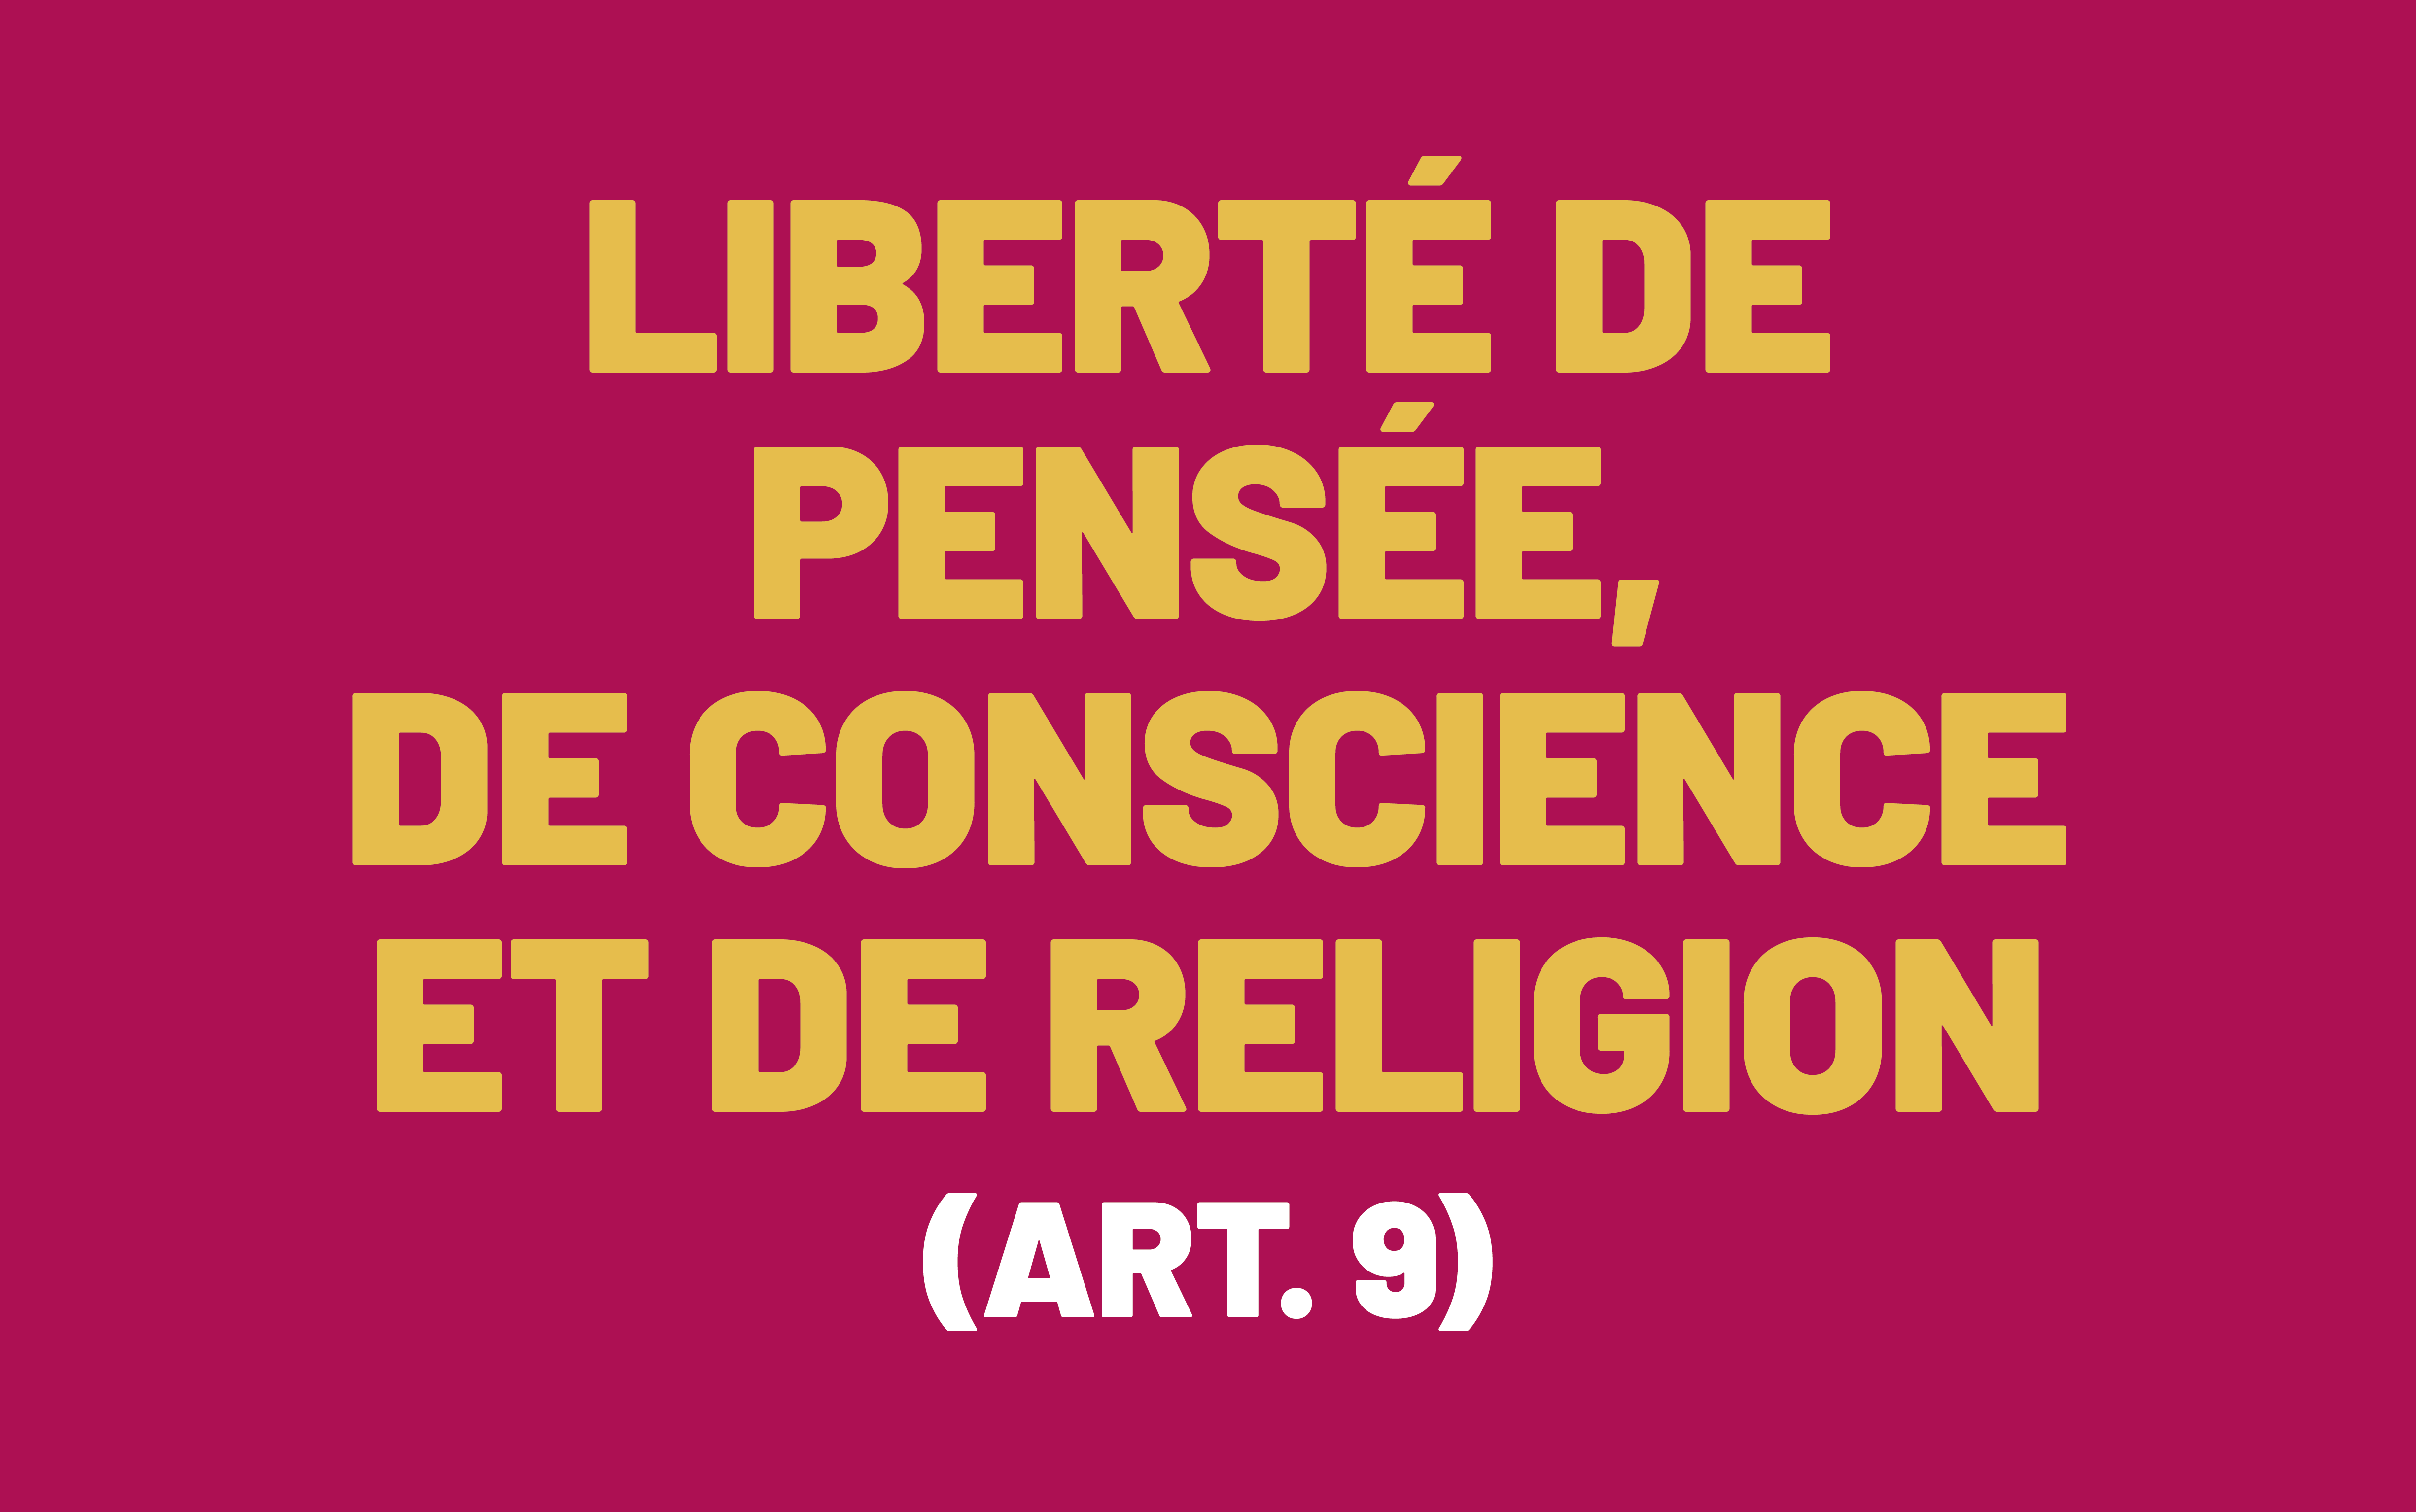 L'image est basée sur la formulation de l'article 9 de la Convention européenne des droits de l'homme, qui stipule : «Liberté de pensée, de conscience et de religion».